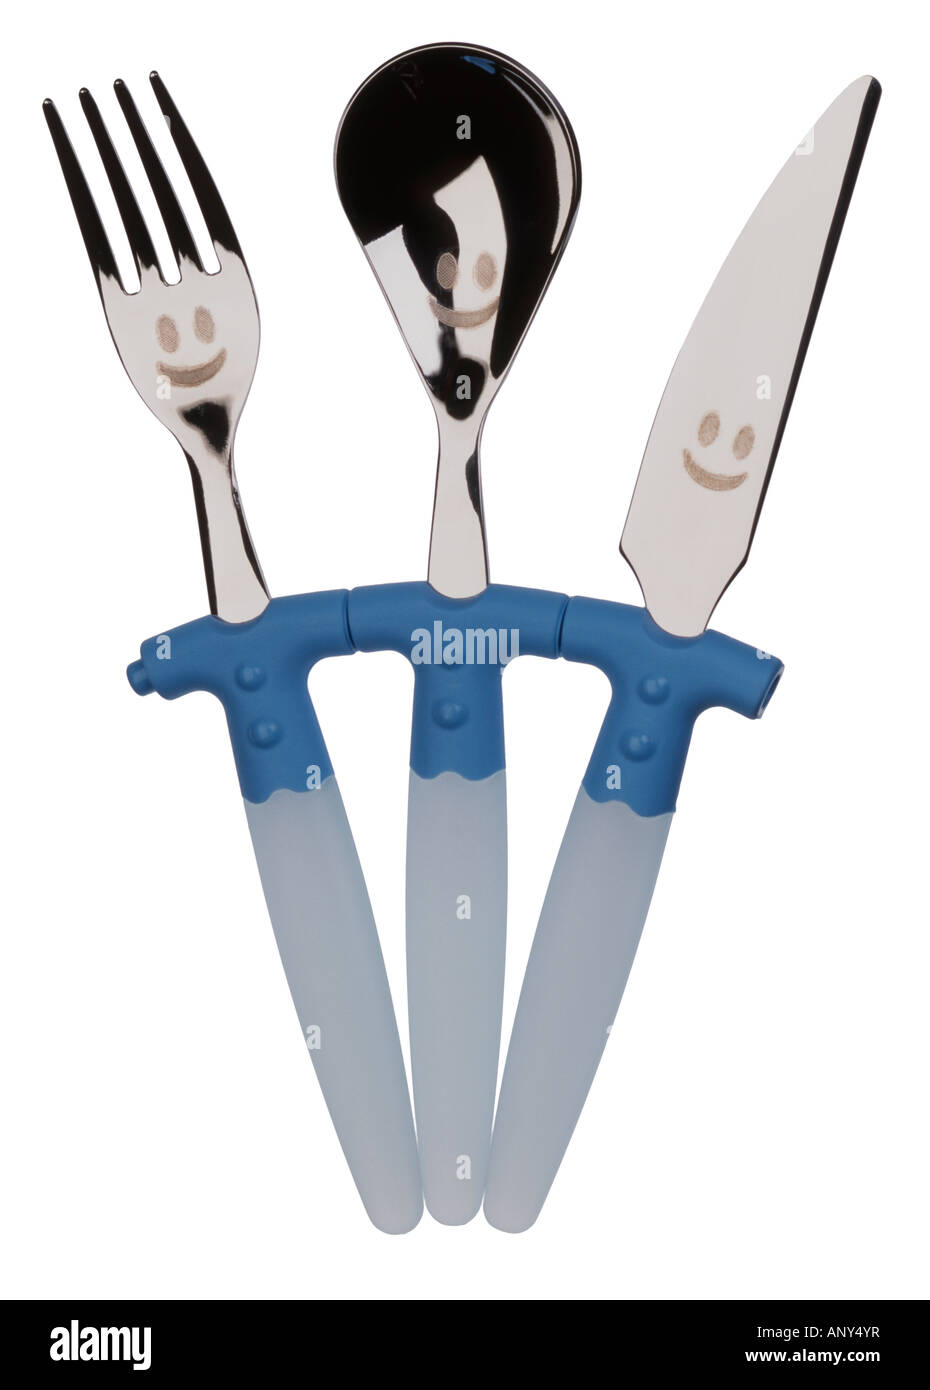 Bambino coltello del cucchiaio e forchetta set di posate Foto Stock